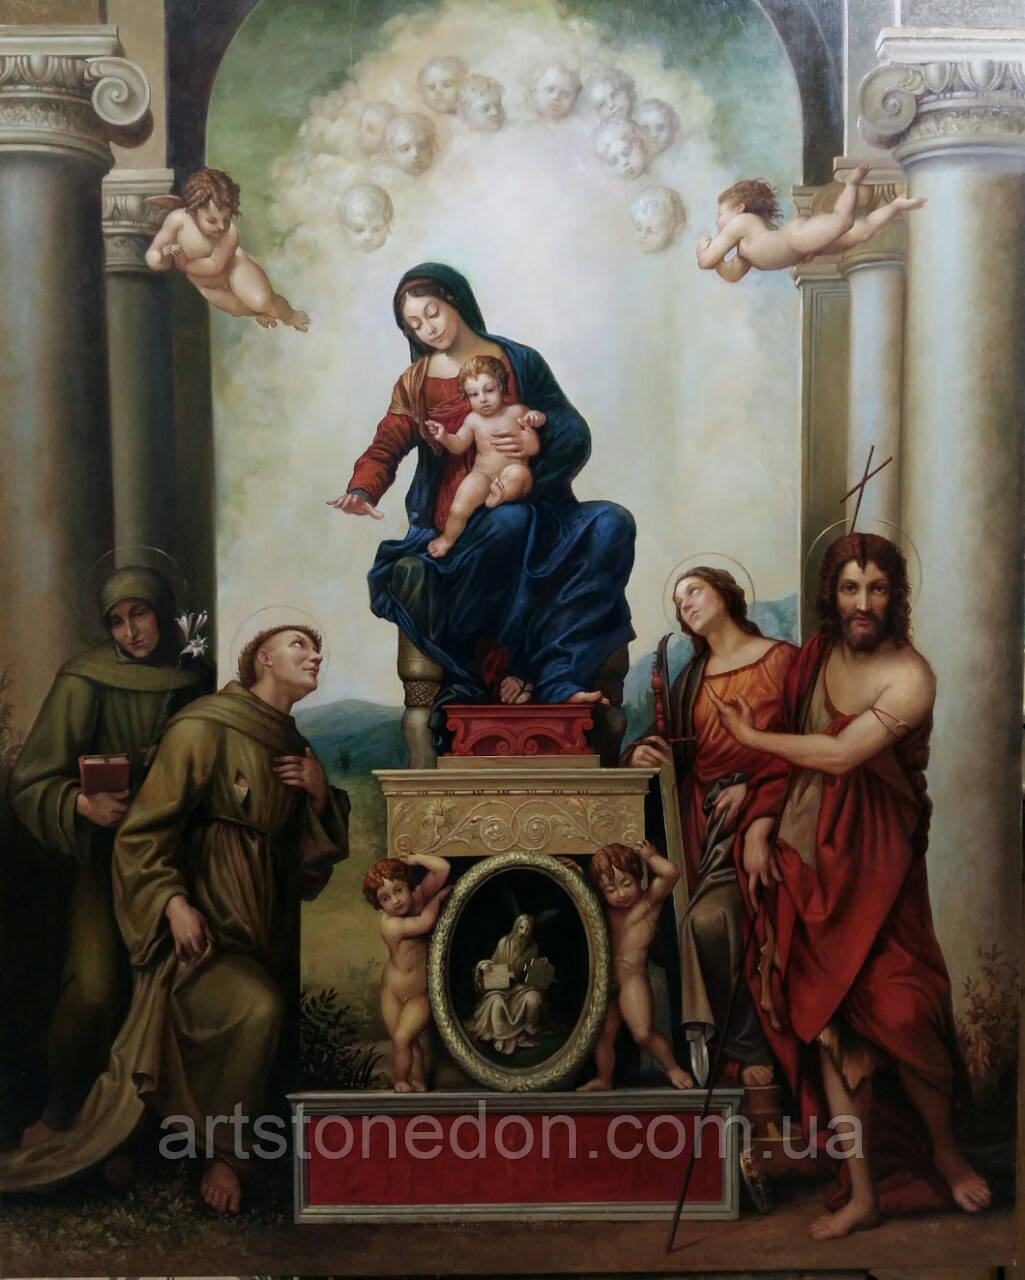 

Картина Антонио Корреджо "Мадонна со Святым Франциском" 100*80 см (копия). Ручная работа картин в Украине